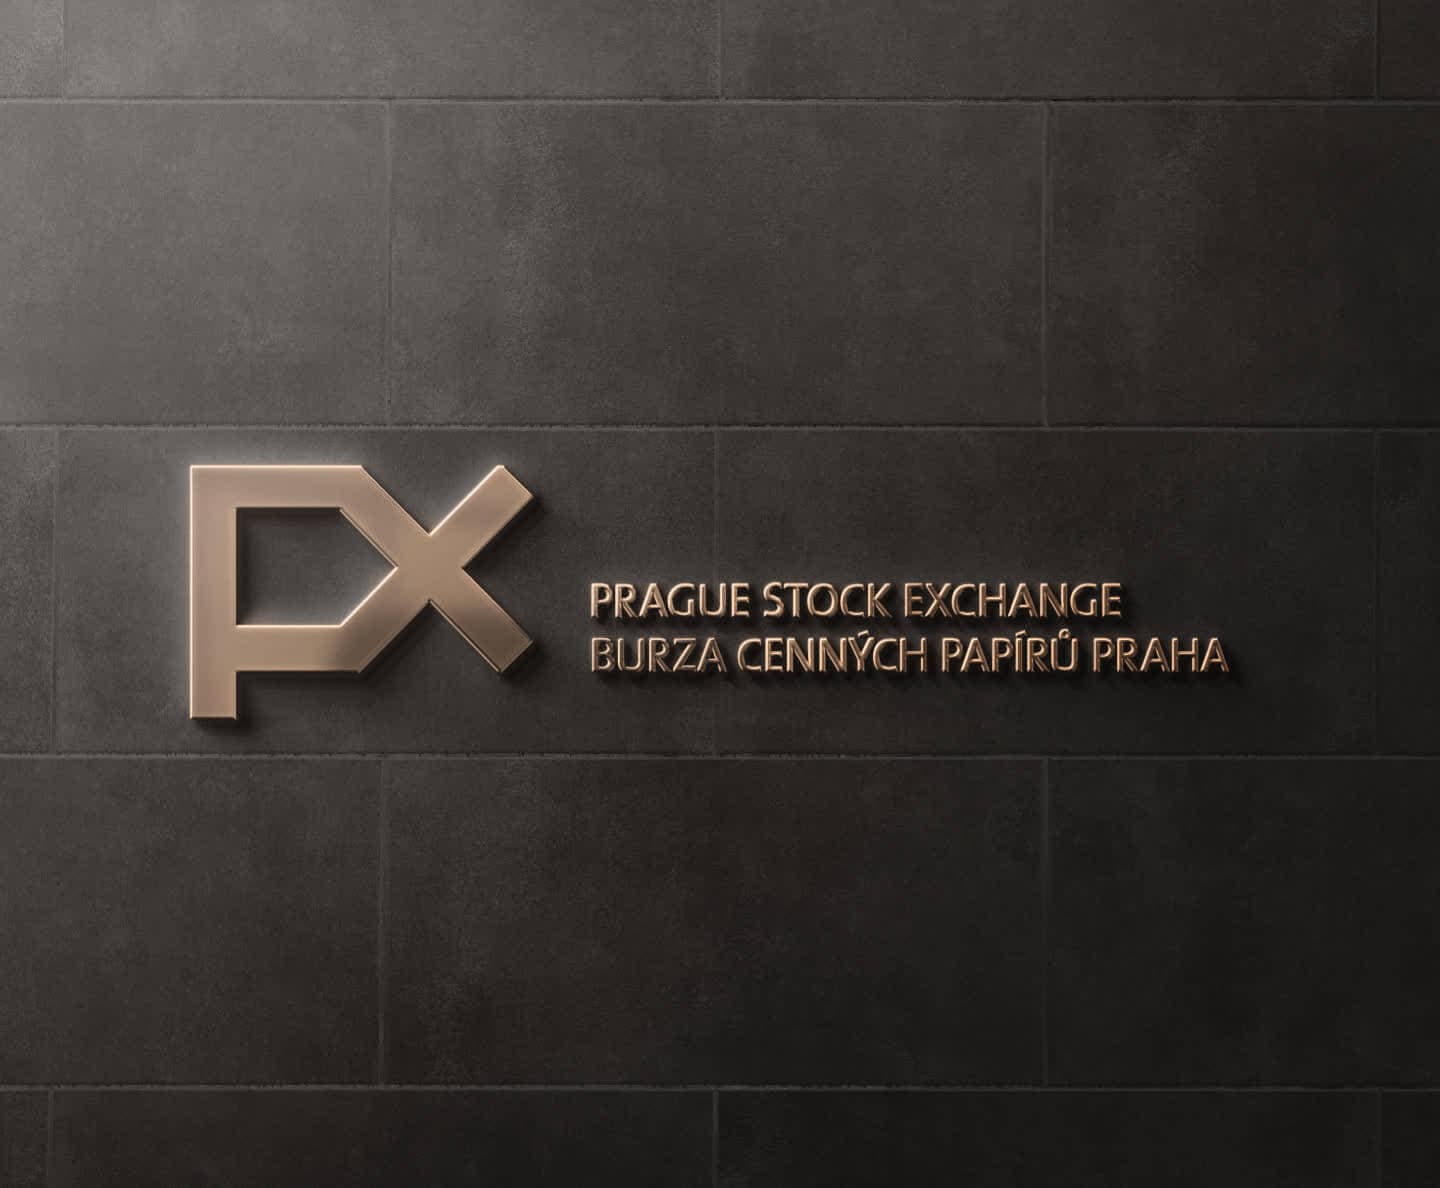 New Prague Stock Exchange website